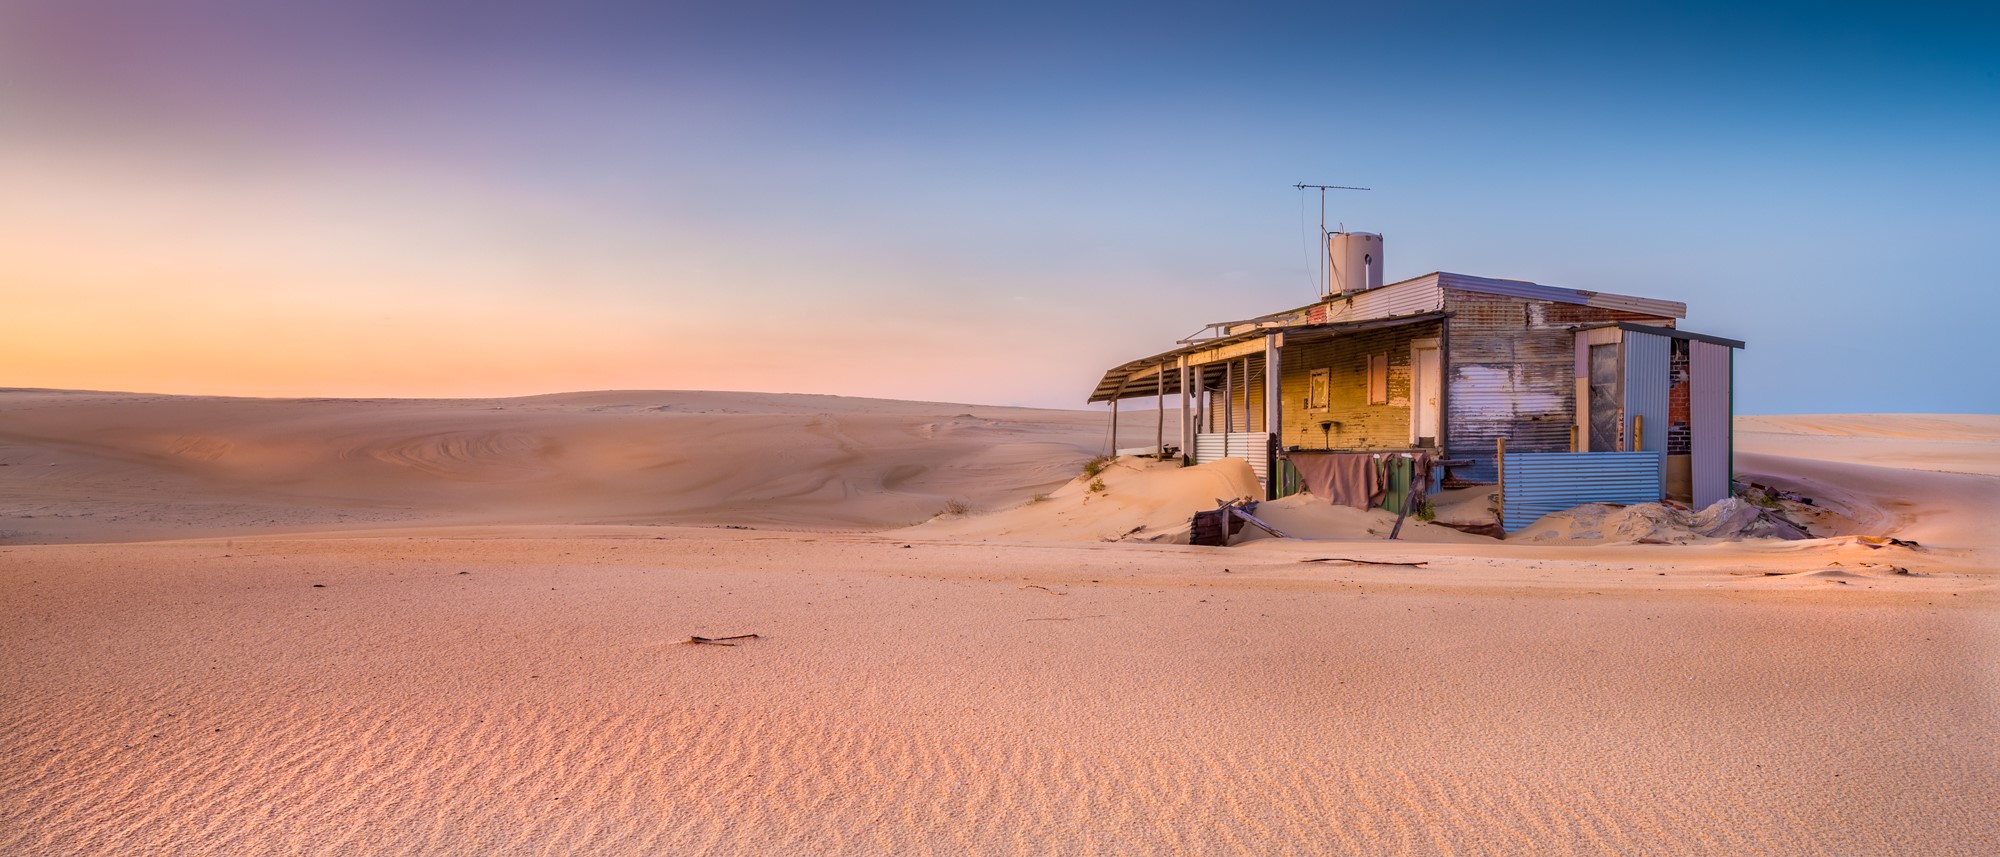 beach shack on the sand 